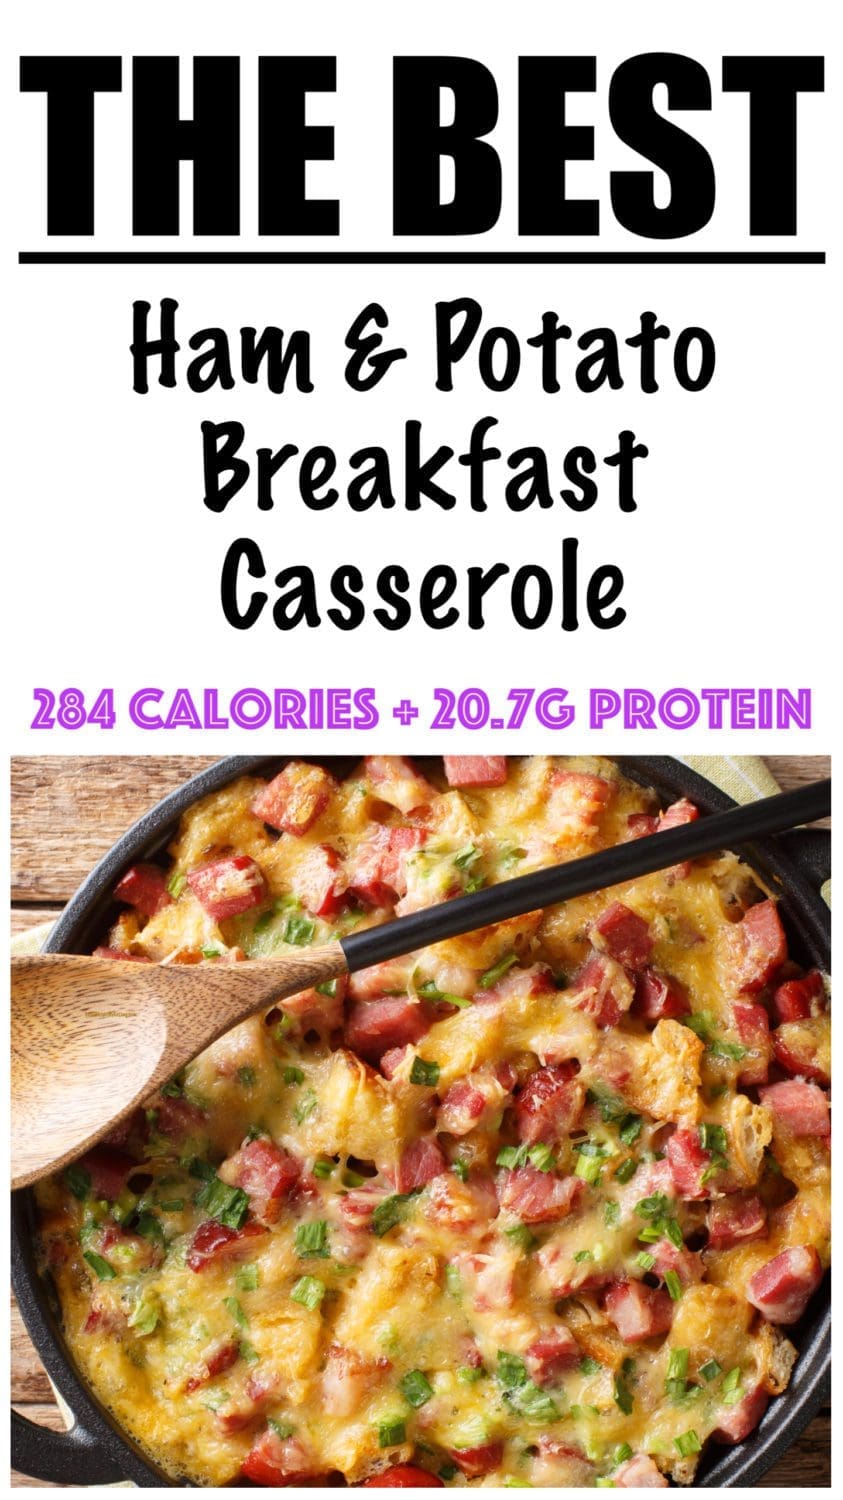 Ham and Potato Breakfast Casserole Recipe